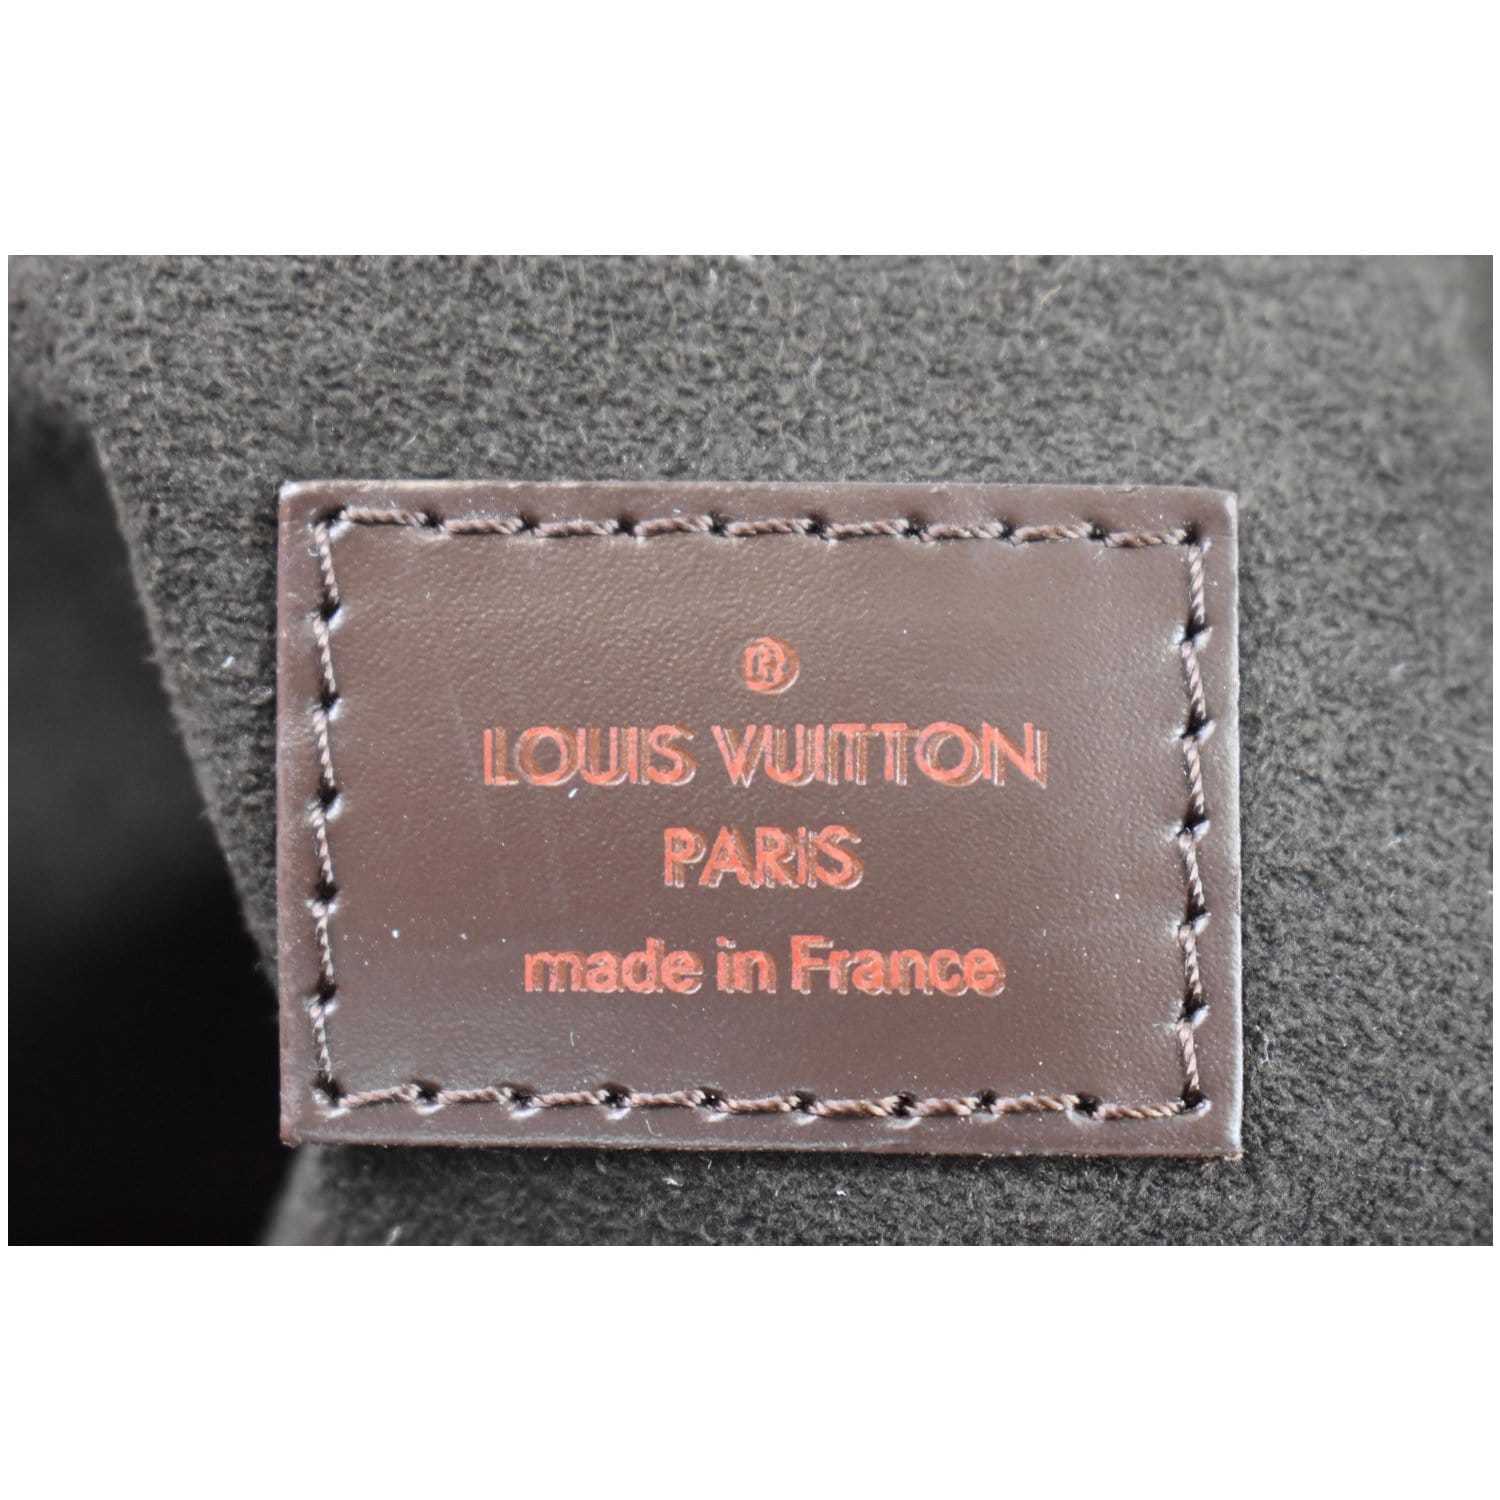 Louis Vuitton Portobello GM Damier Ebene - THE PURSE AFFAIR